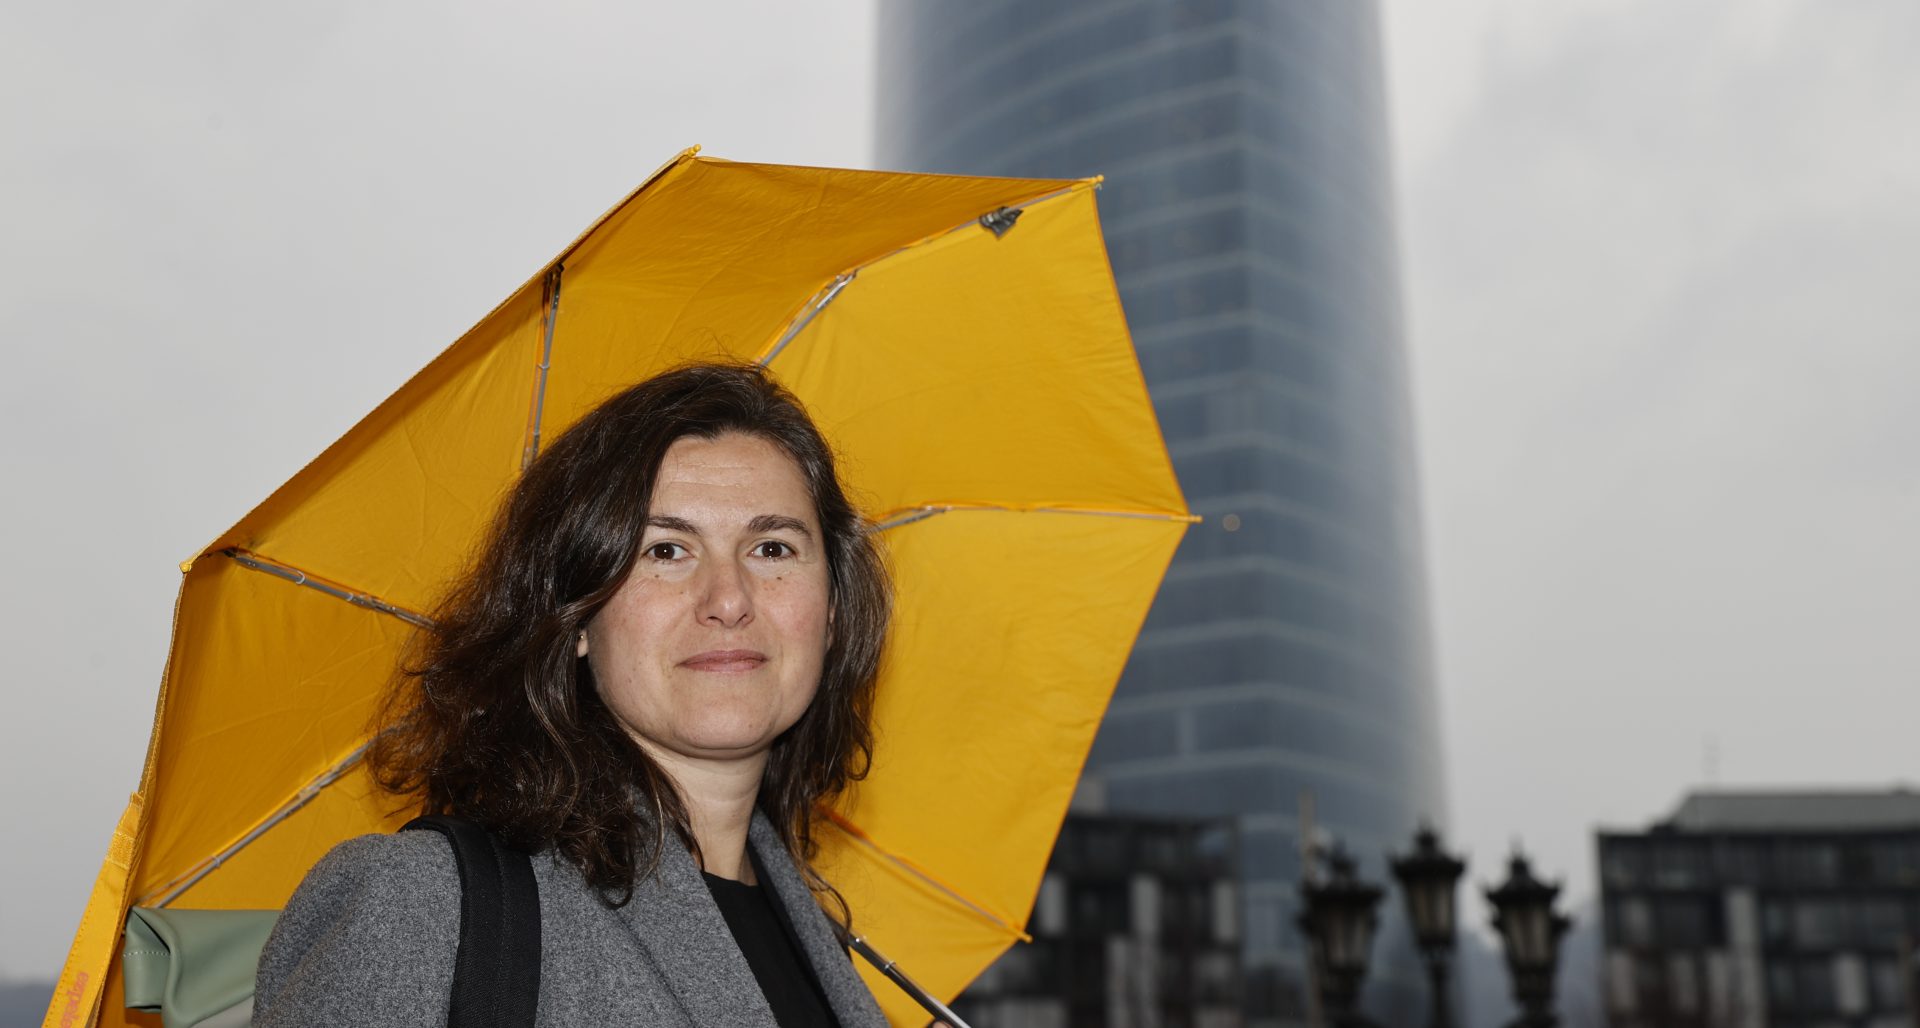 La presidenta de la Asociación de Mujeres Emprendedoras y Empresarias de Euskadi, Miren Lauzirika, afirma que a las mujeres se las ha educado para estar en la "retaguardia" y ser "perfeccionistas", cuestiones que no casan con emprender. EFE/Luis Tejido